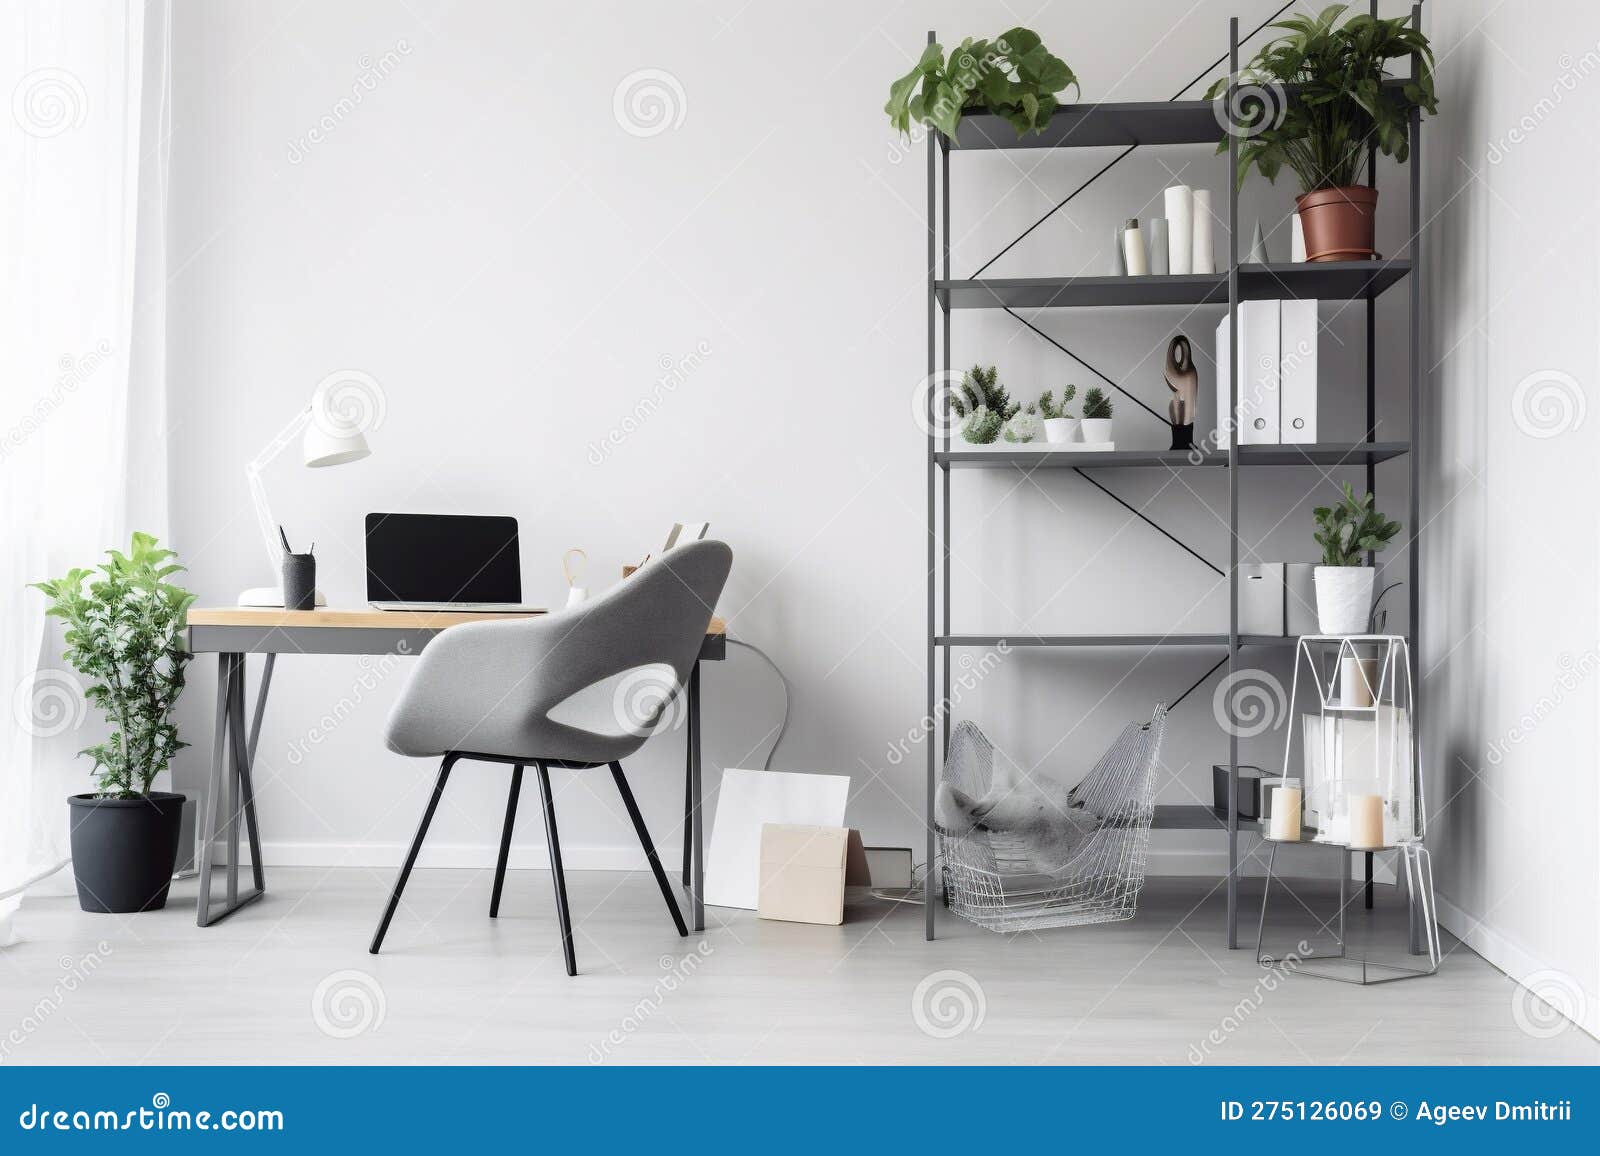 Mesa de oficina NEKO fondo 80 cm, 4 patas metálicas, color blanco u olmo -  Mobiocasión